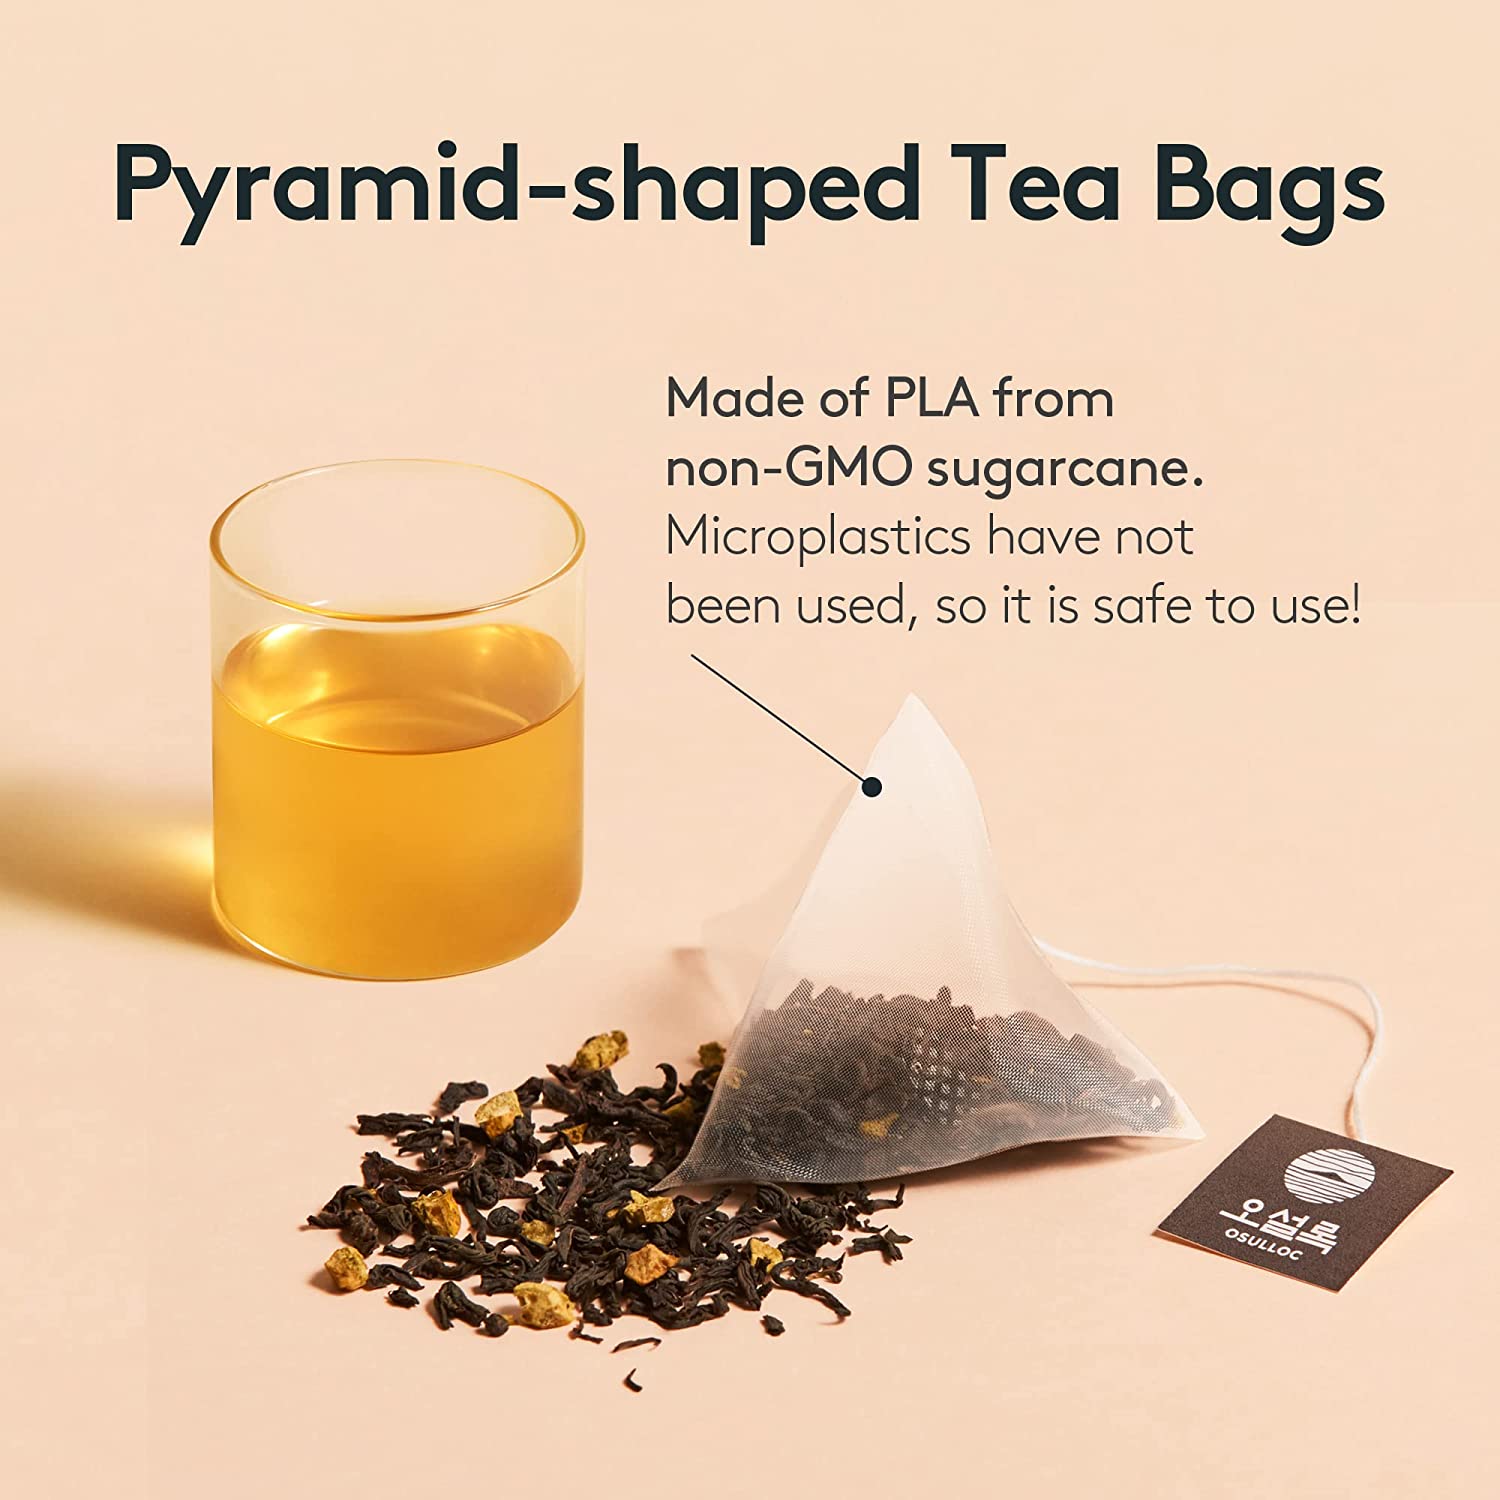 [오설록 제주 삼다 영귤 티 ]OSULLOC Tangerine Tea, Premium Organic Blended Tea from Jeju, Tea Bag Series 10 or 20 pakcs